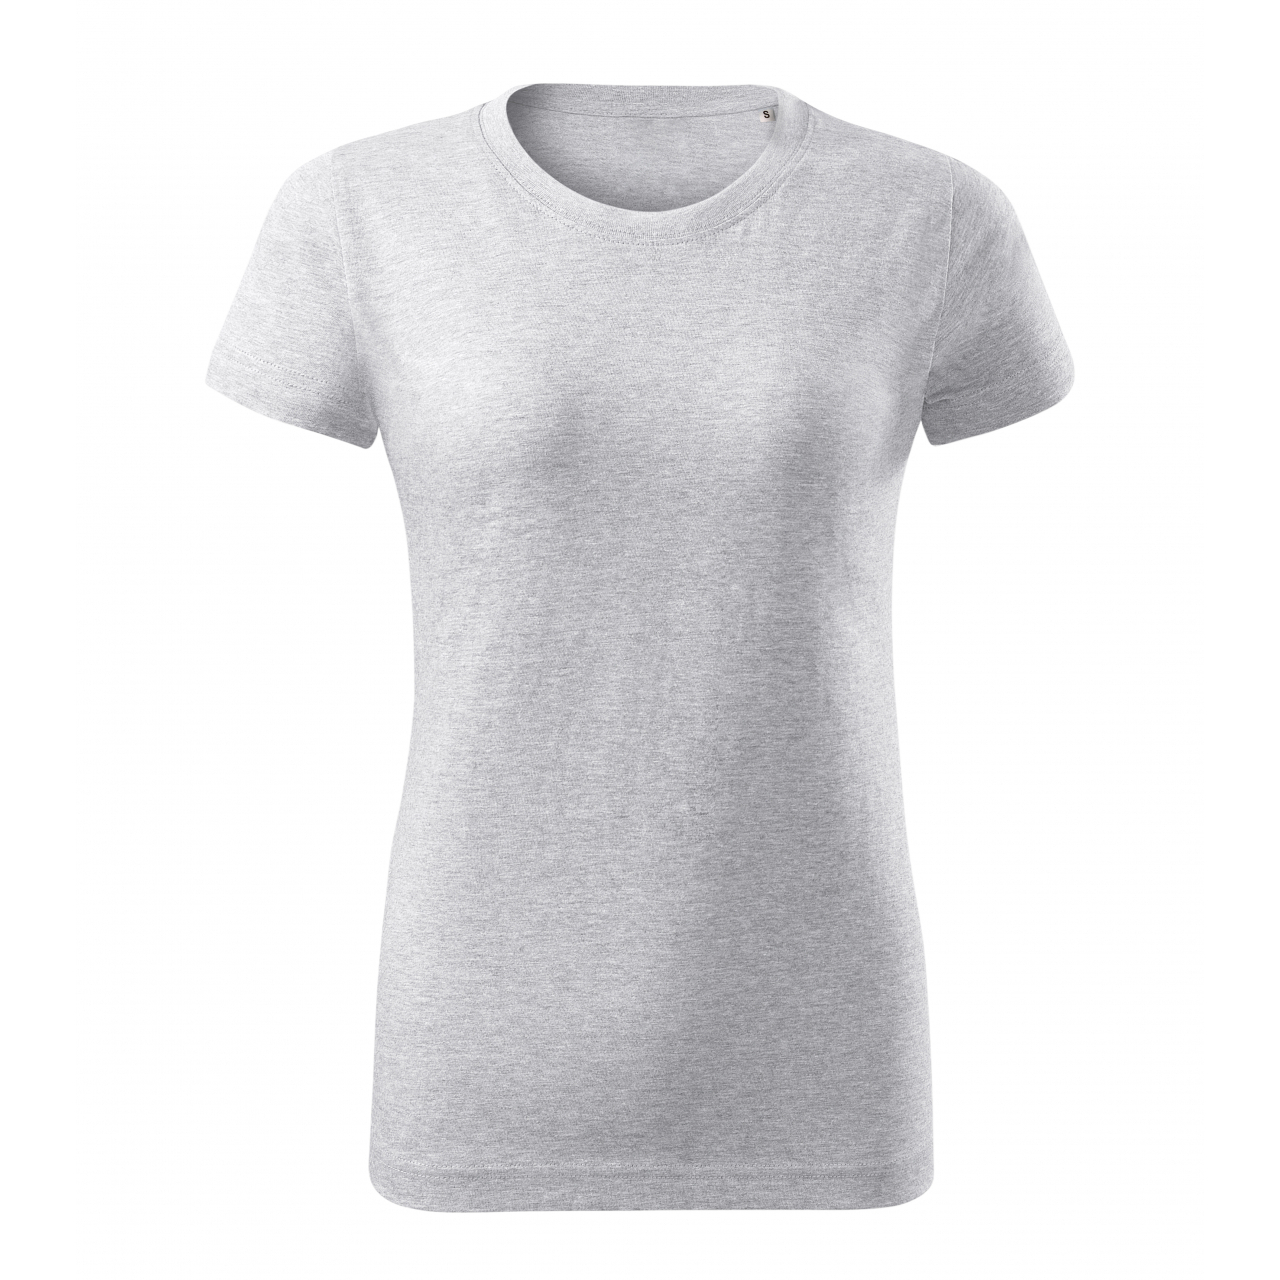 Tričko dámské Malfini Basic Free - světle šedé, XS